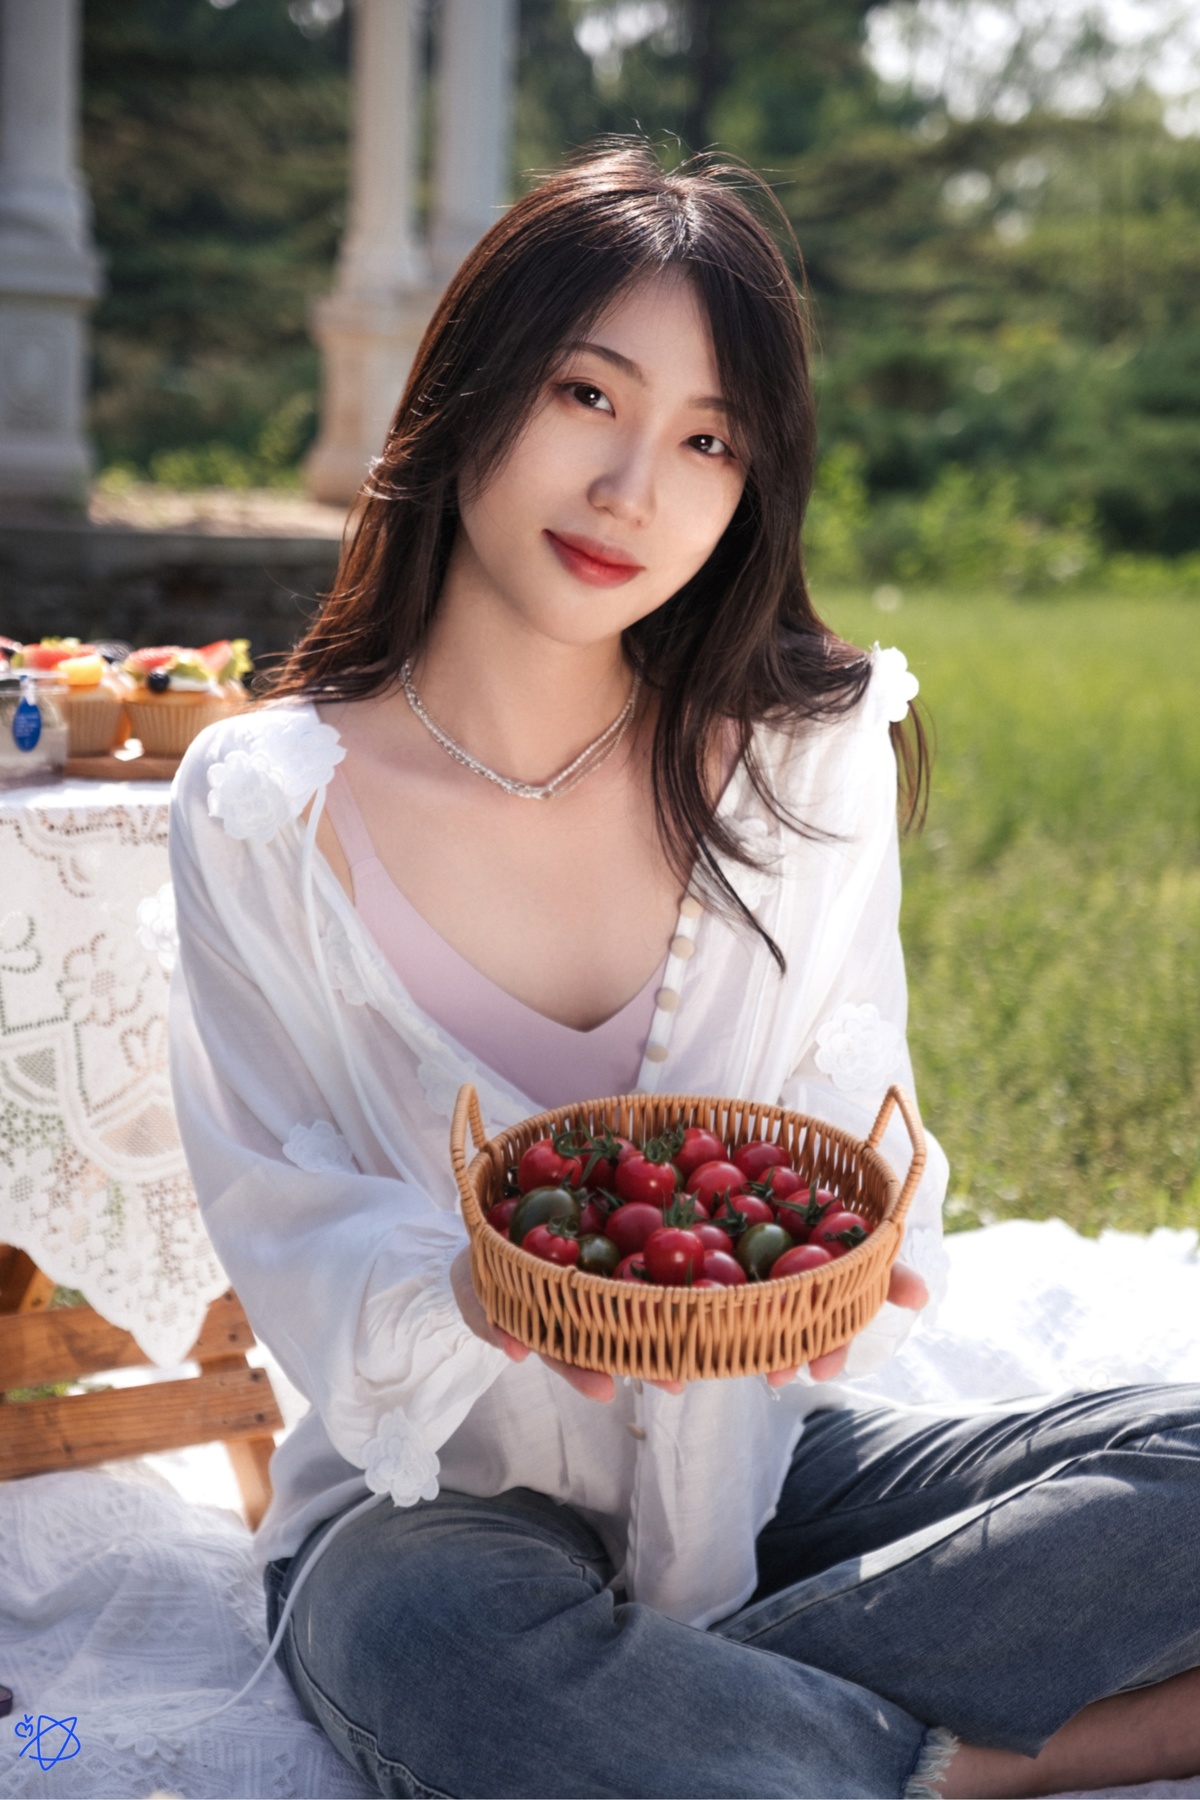 一位美丽的女士在野餐时拿着一个装满红樱桃和苹果的篮子。